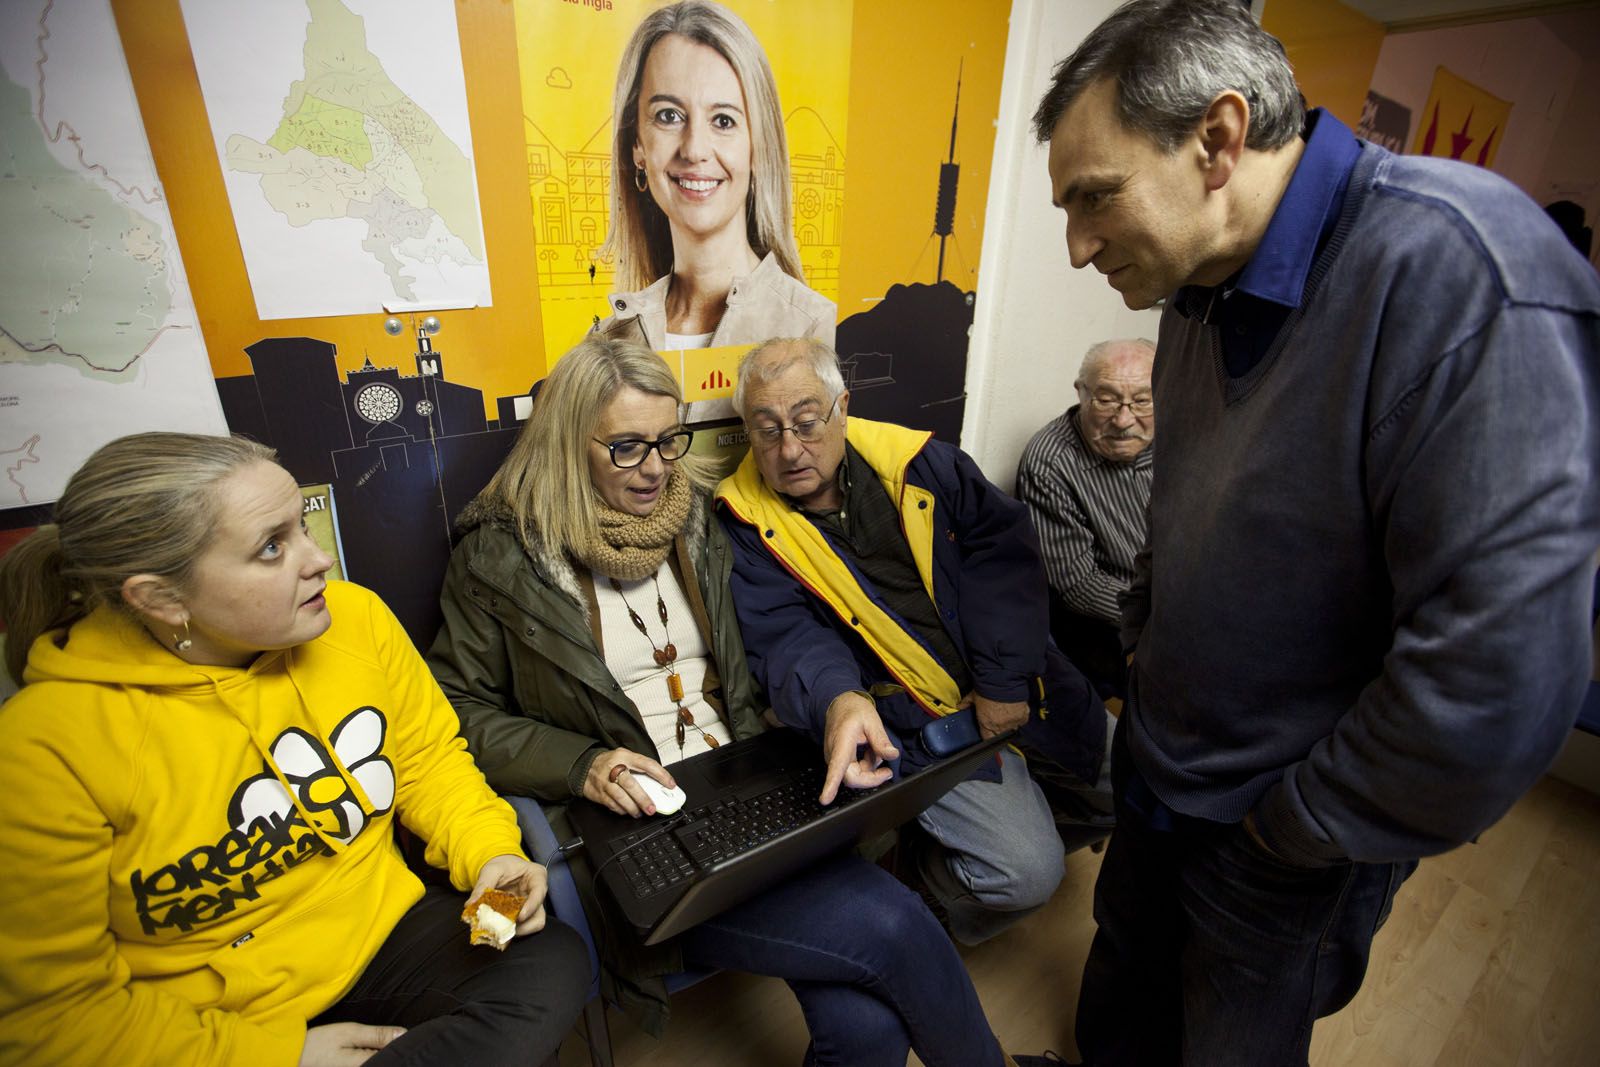 Membres del partit s'han trobat a la seu d'ERC per conèixer els resultats. FOTO: Lali Puig